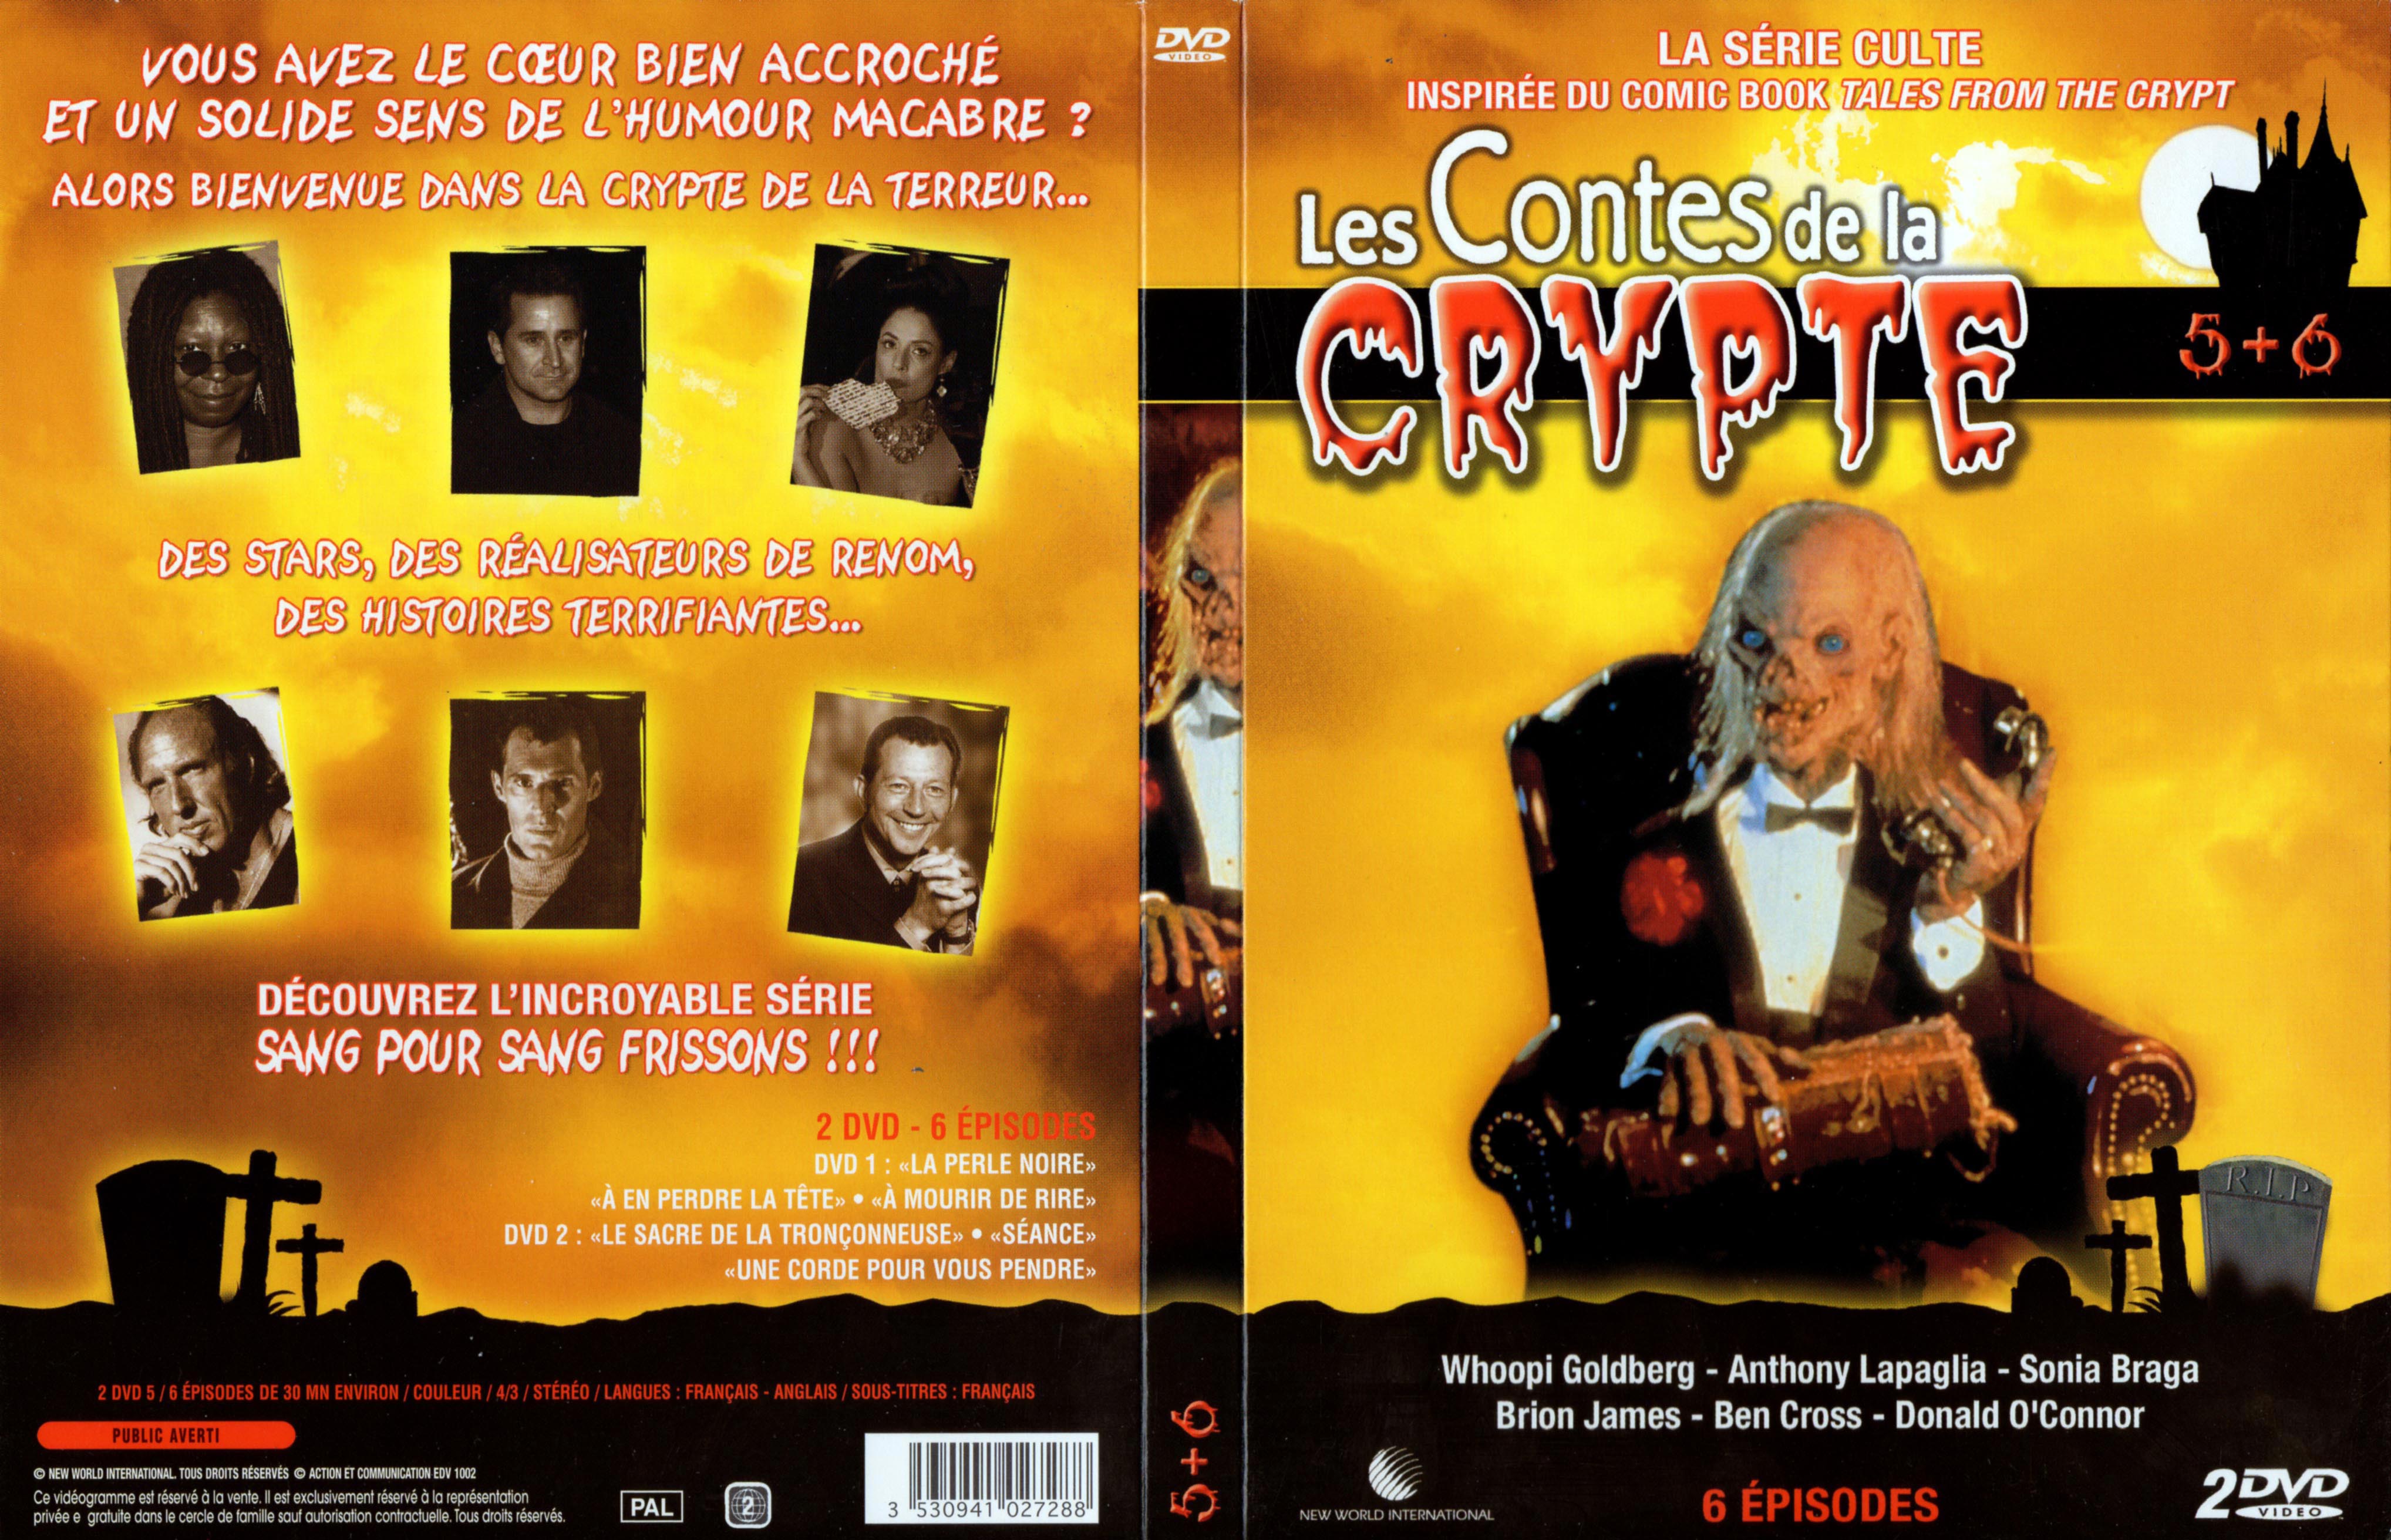 Jaquette DVD Les contes de la crypte Vol 5 et 6